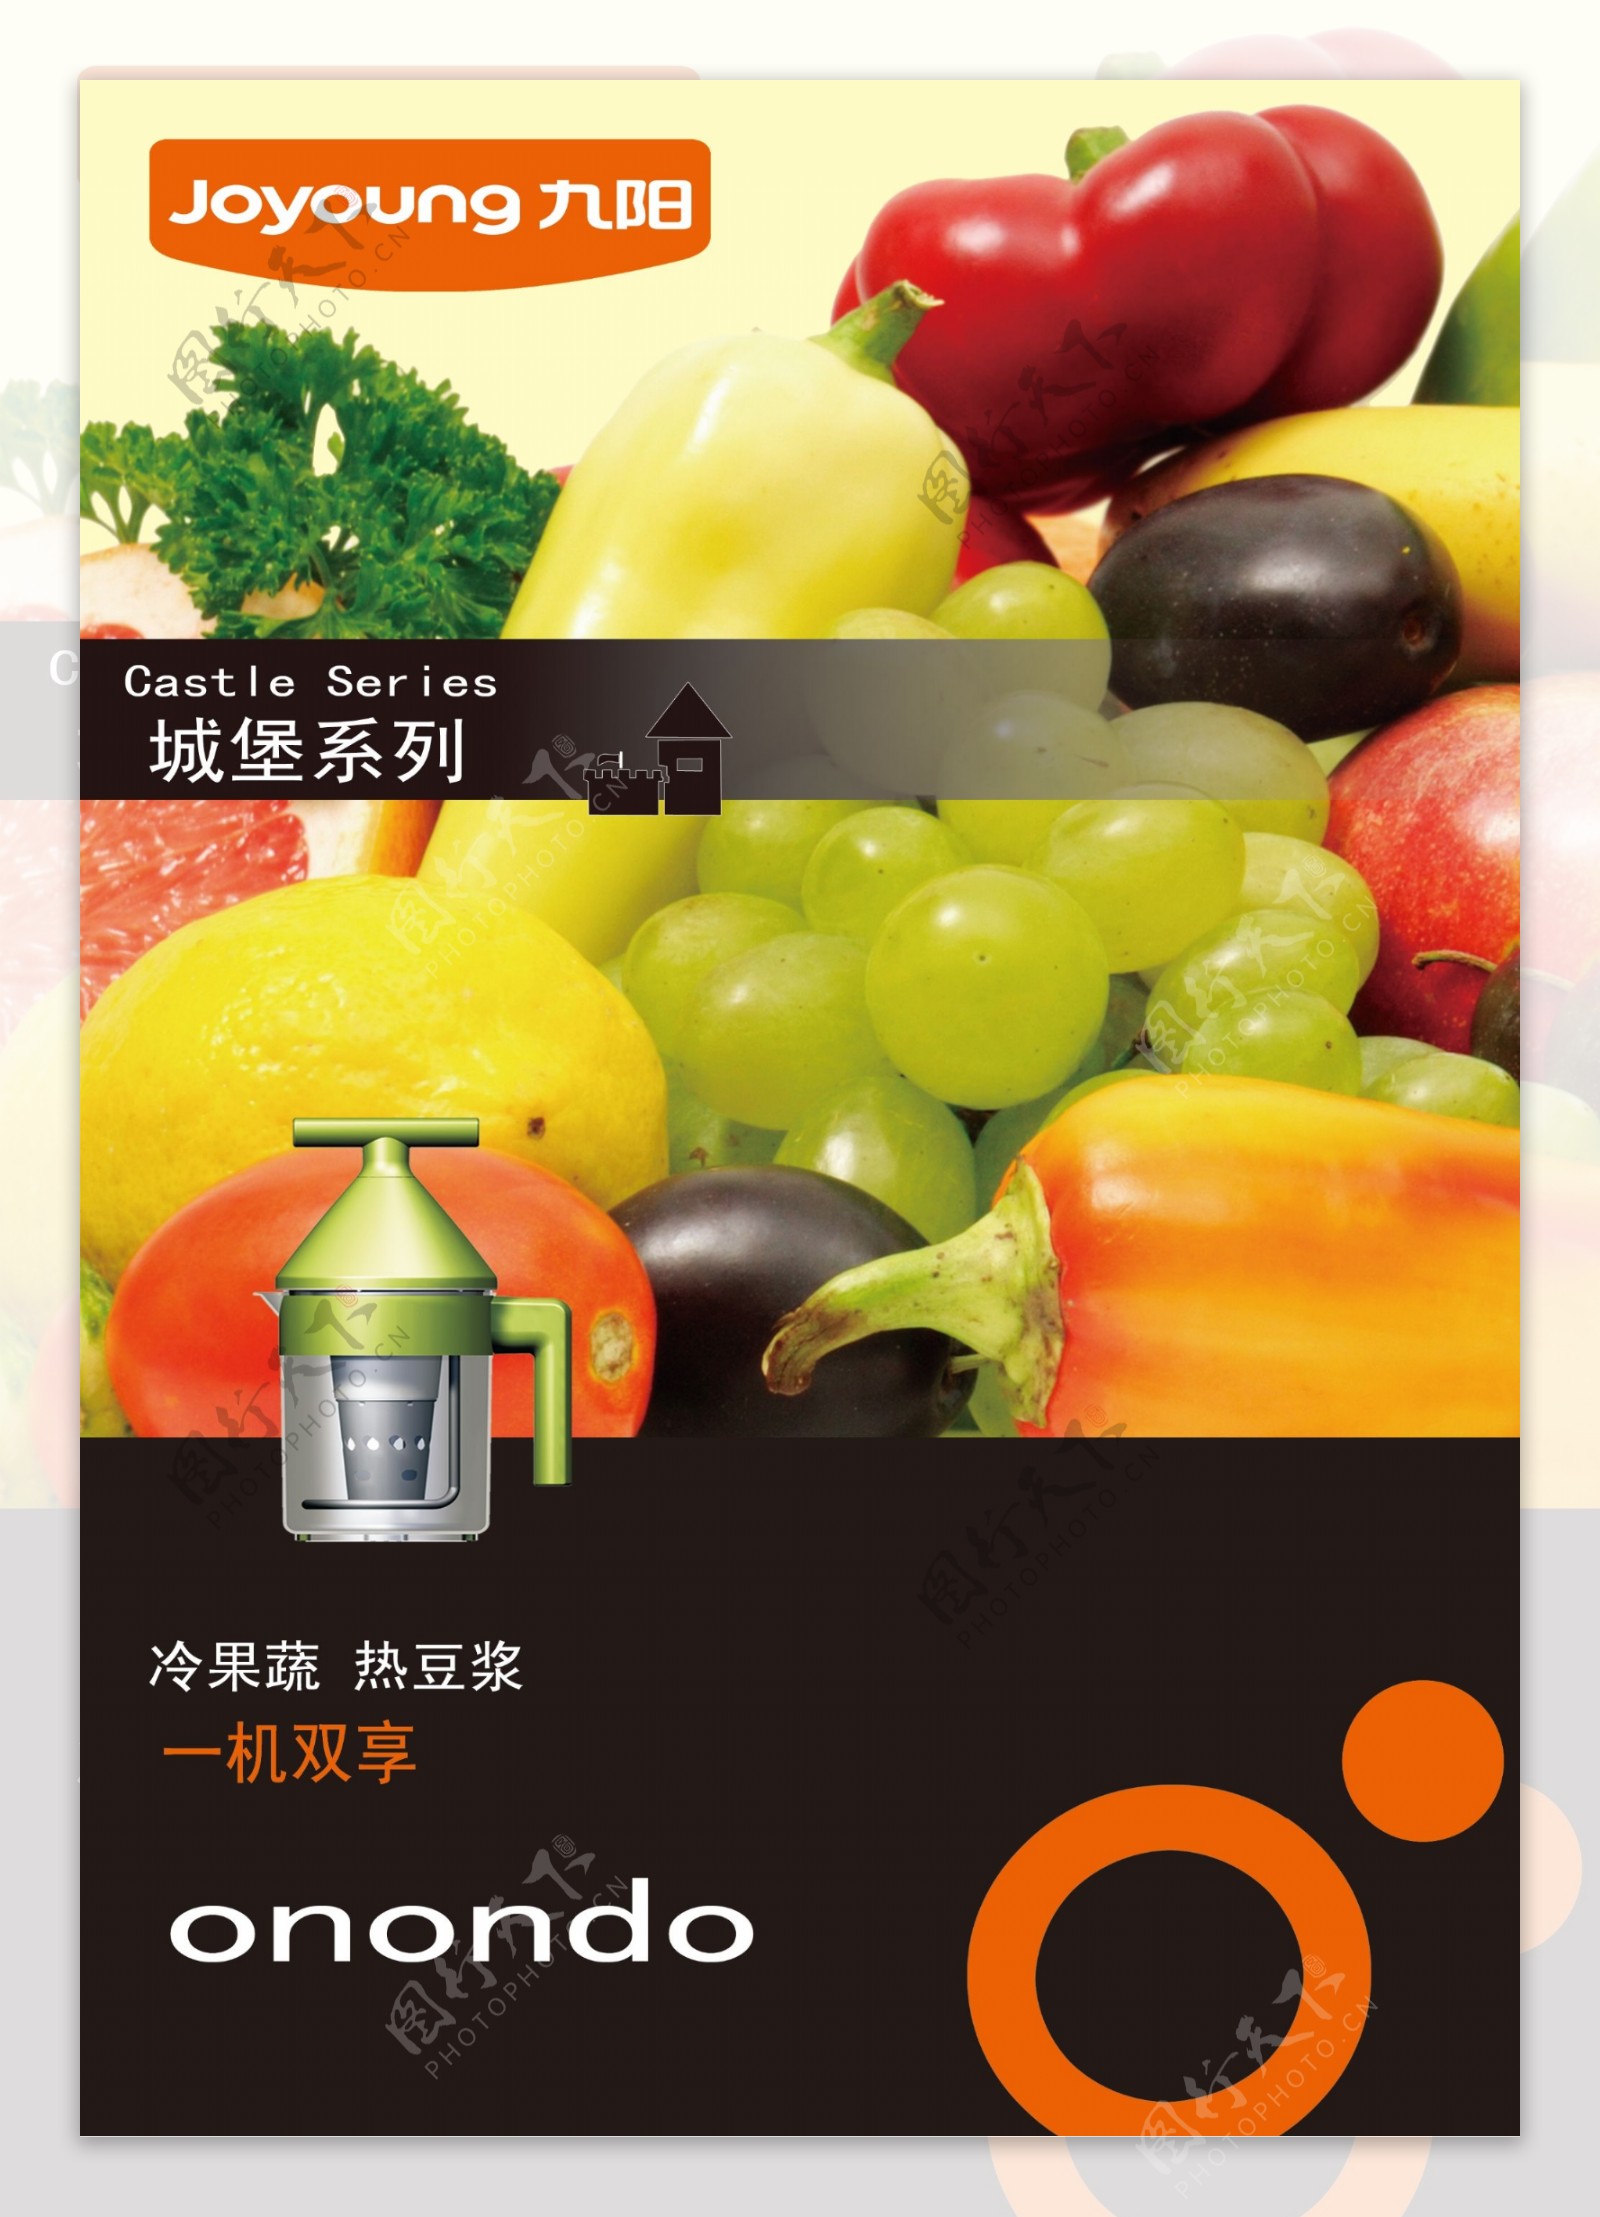 榨汁豆浆一体机九阳系列广告宣传图片